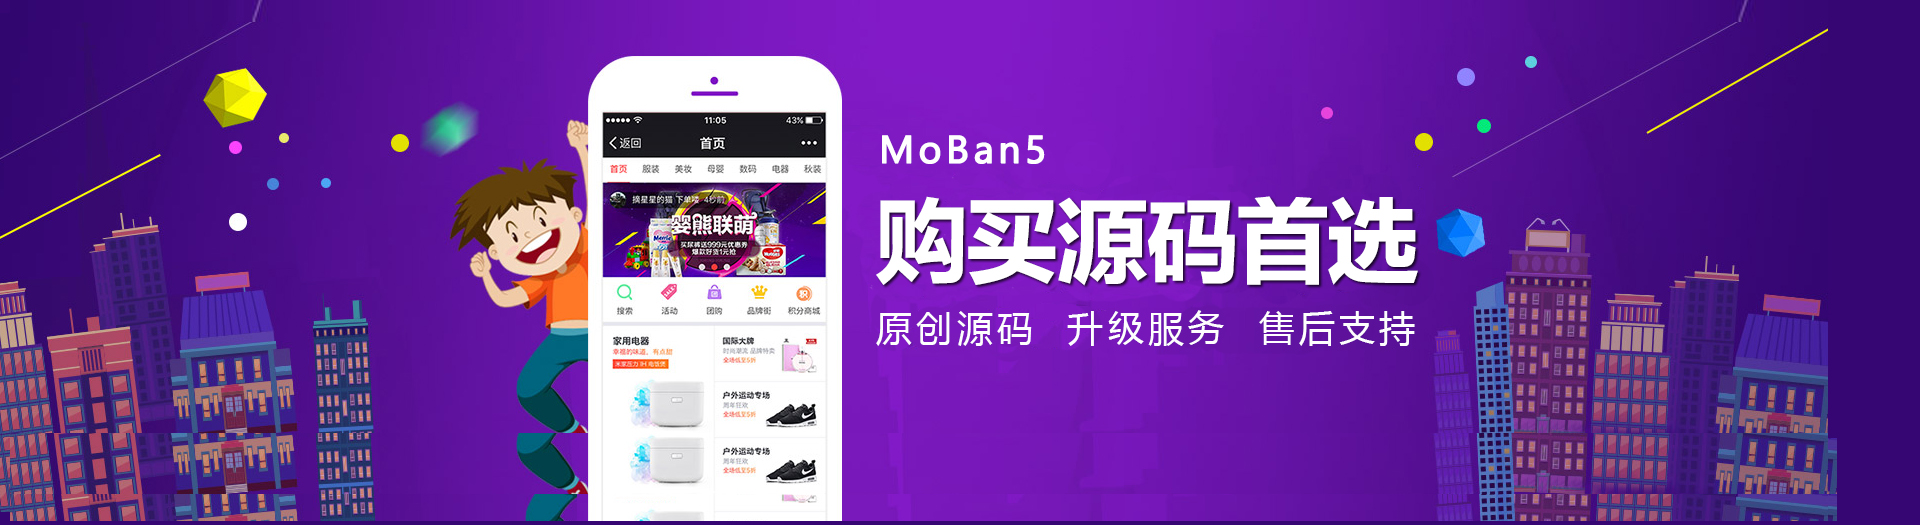 moban5源码 全新的UI 优质的内容